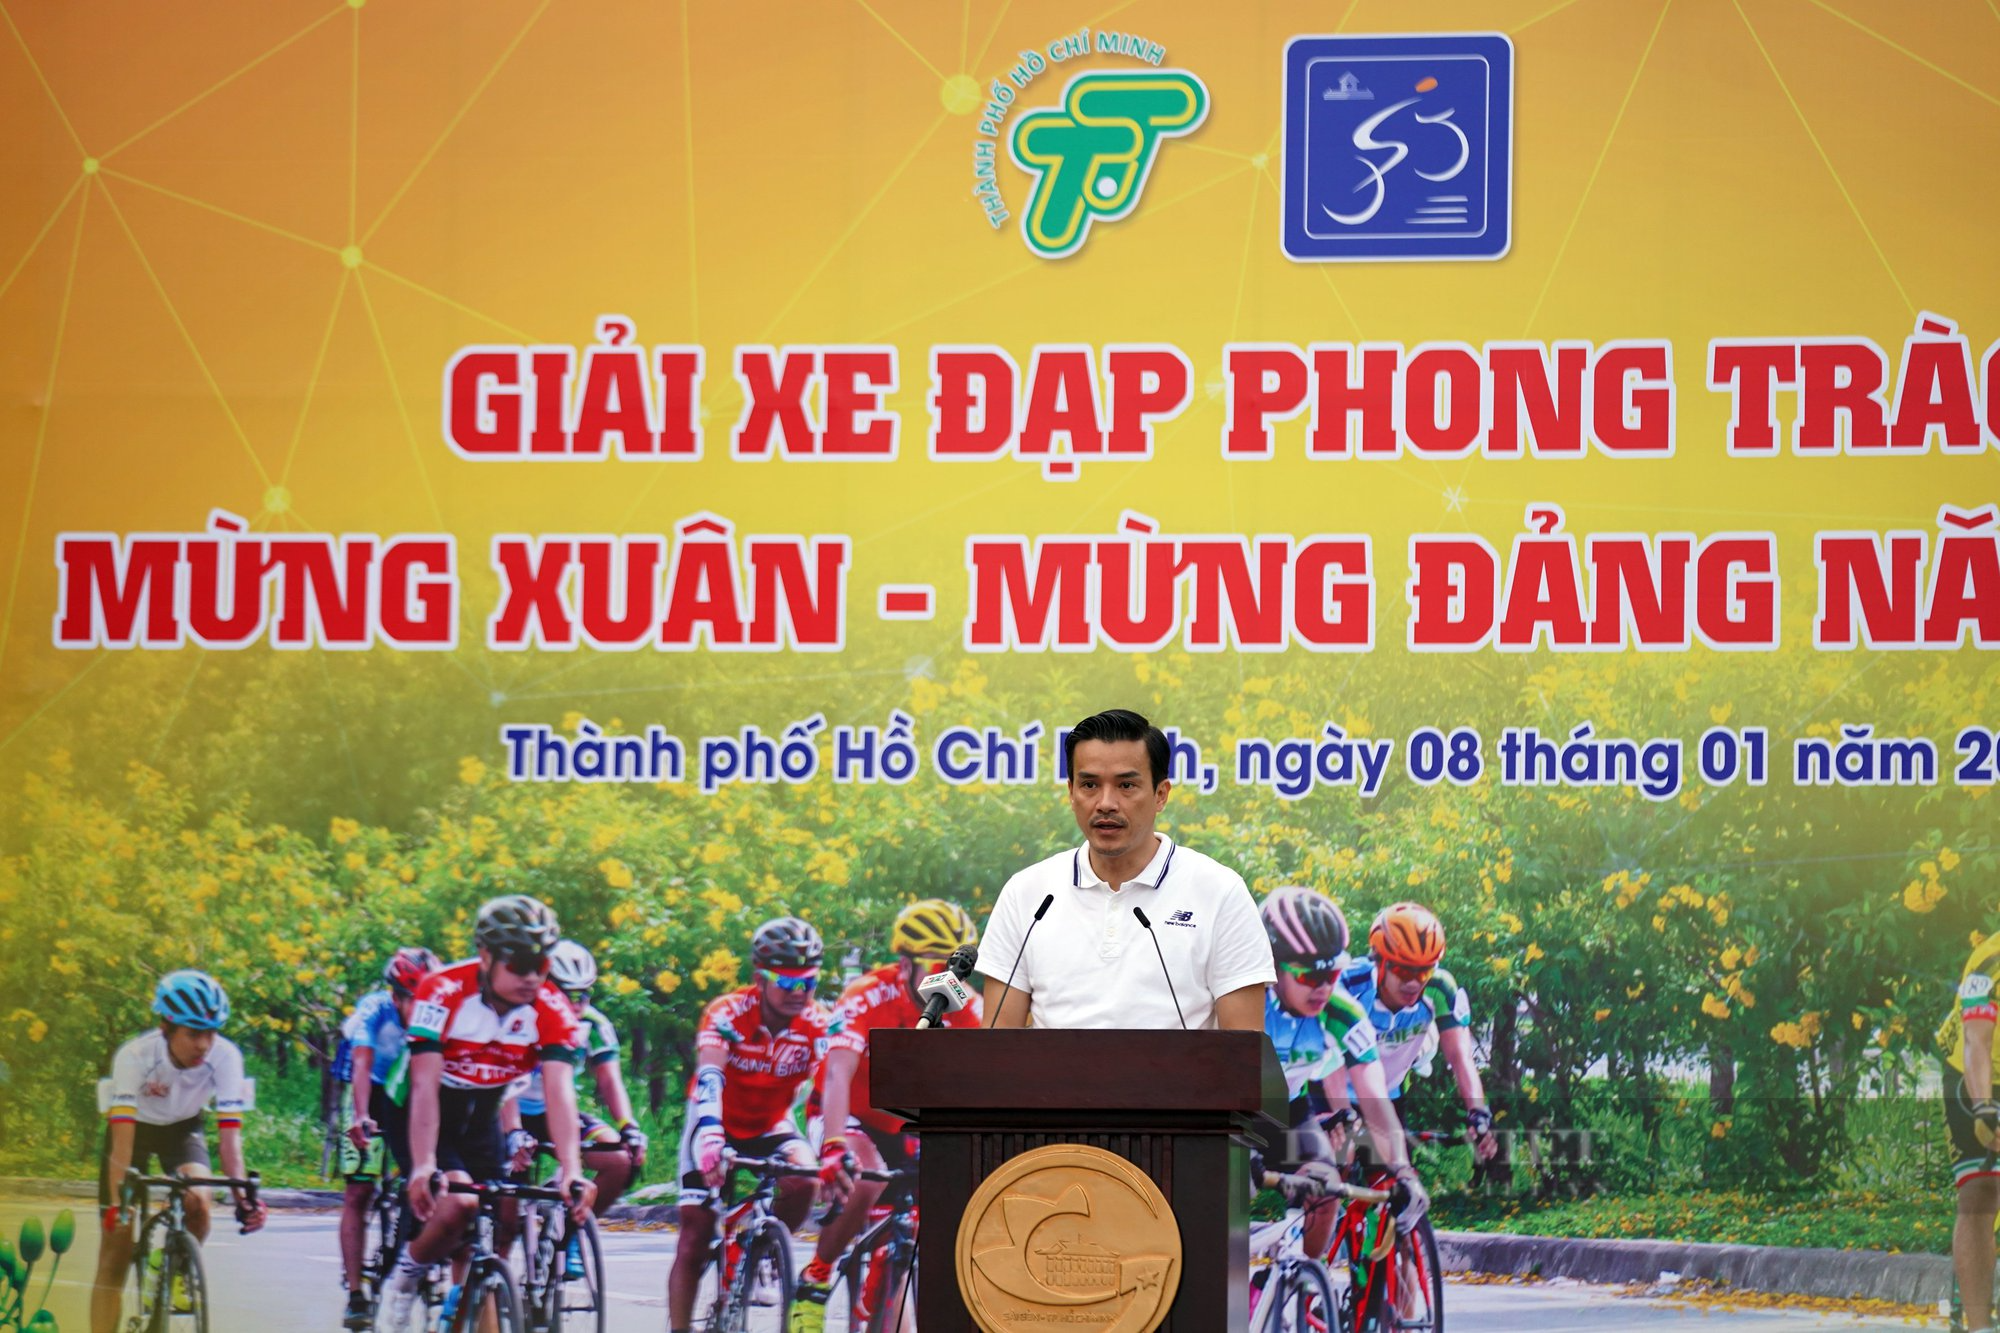 Tưng bừng Giải xe đạp mừng Xuân tại TP.HCM - Ảnh 1.